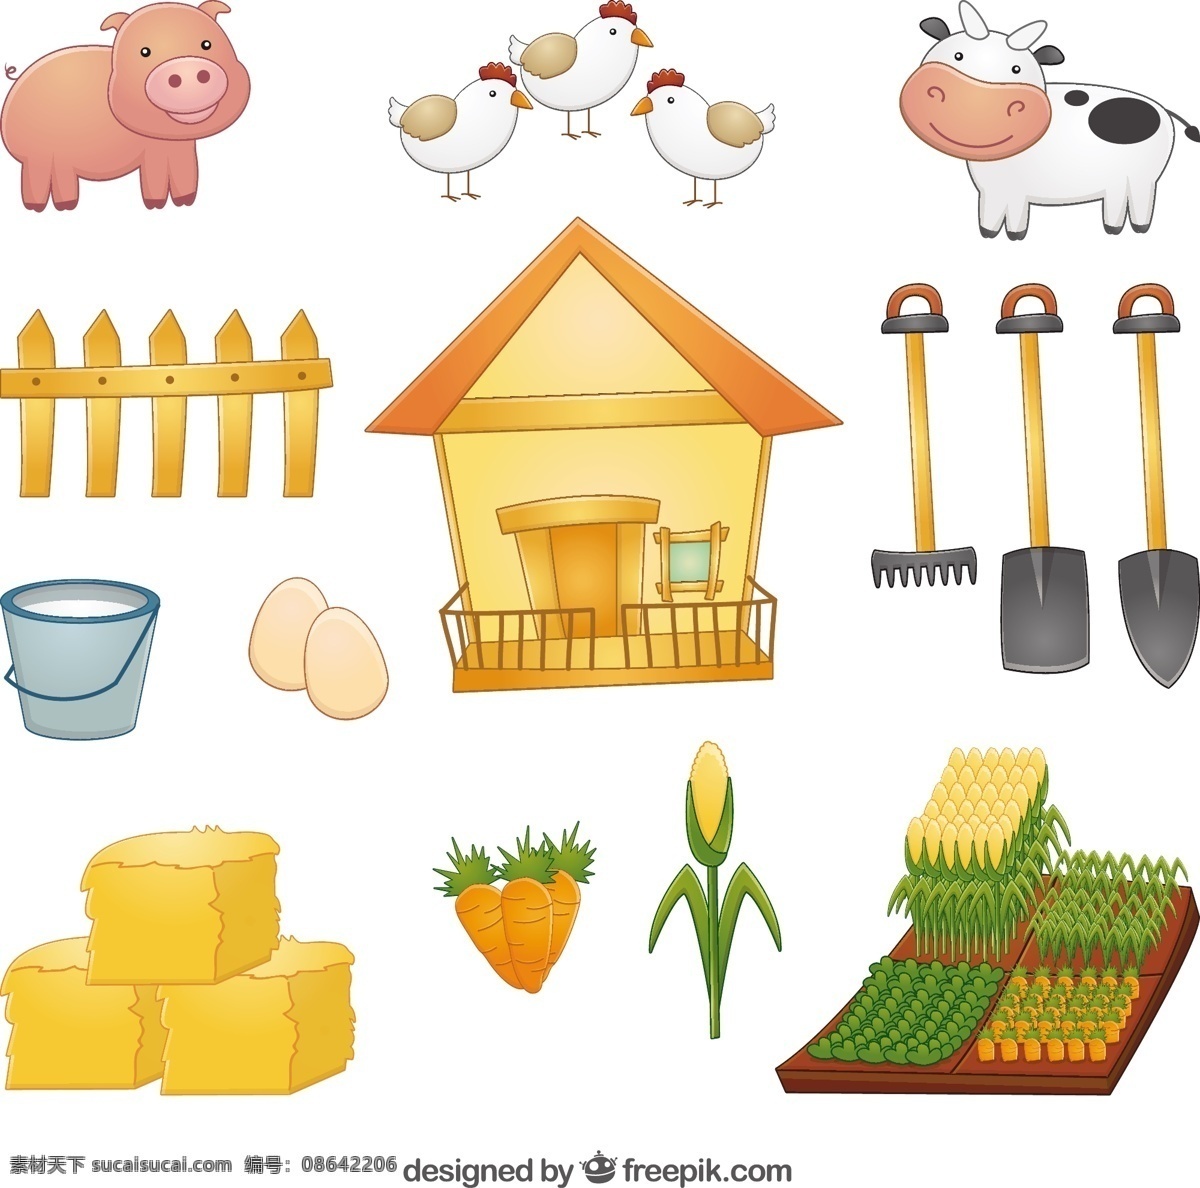 农业 元素 动物 收集 自然 农场 景观 蔬菜 奶牛 生态 有机 猪 蛋 农民 环境 发展 玉米 土地 胡萝卜 农场动物